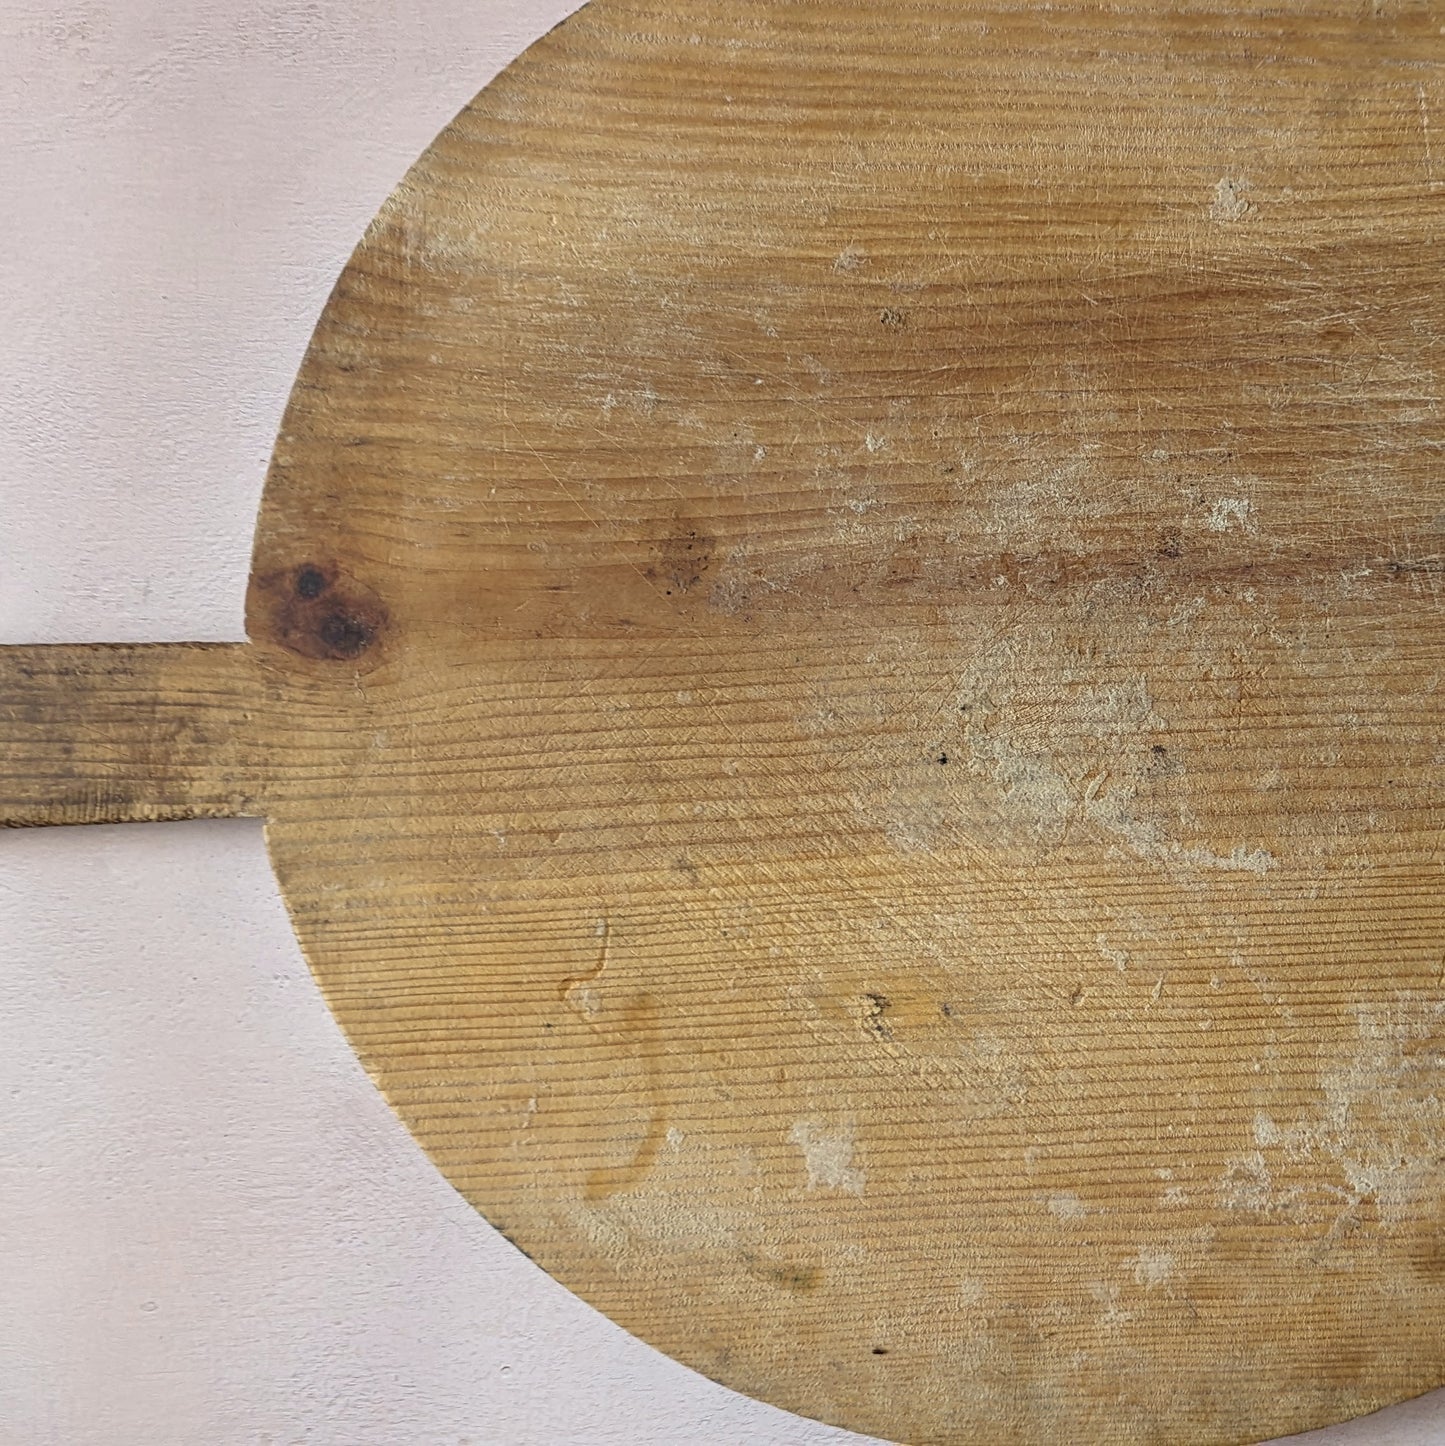 Warm Wood Round Antique Bread Board